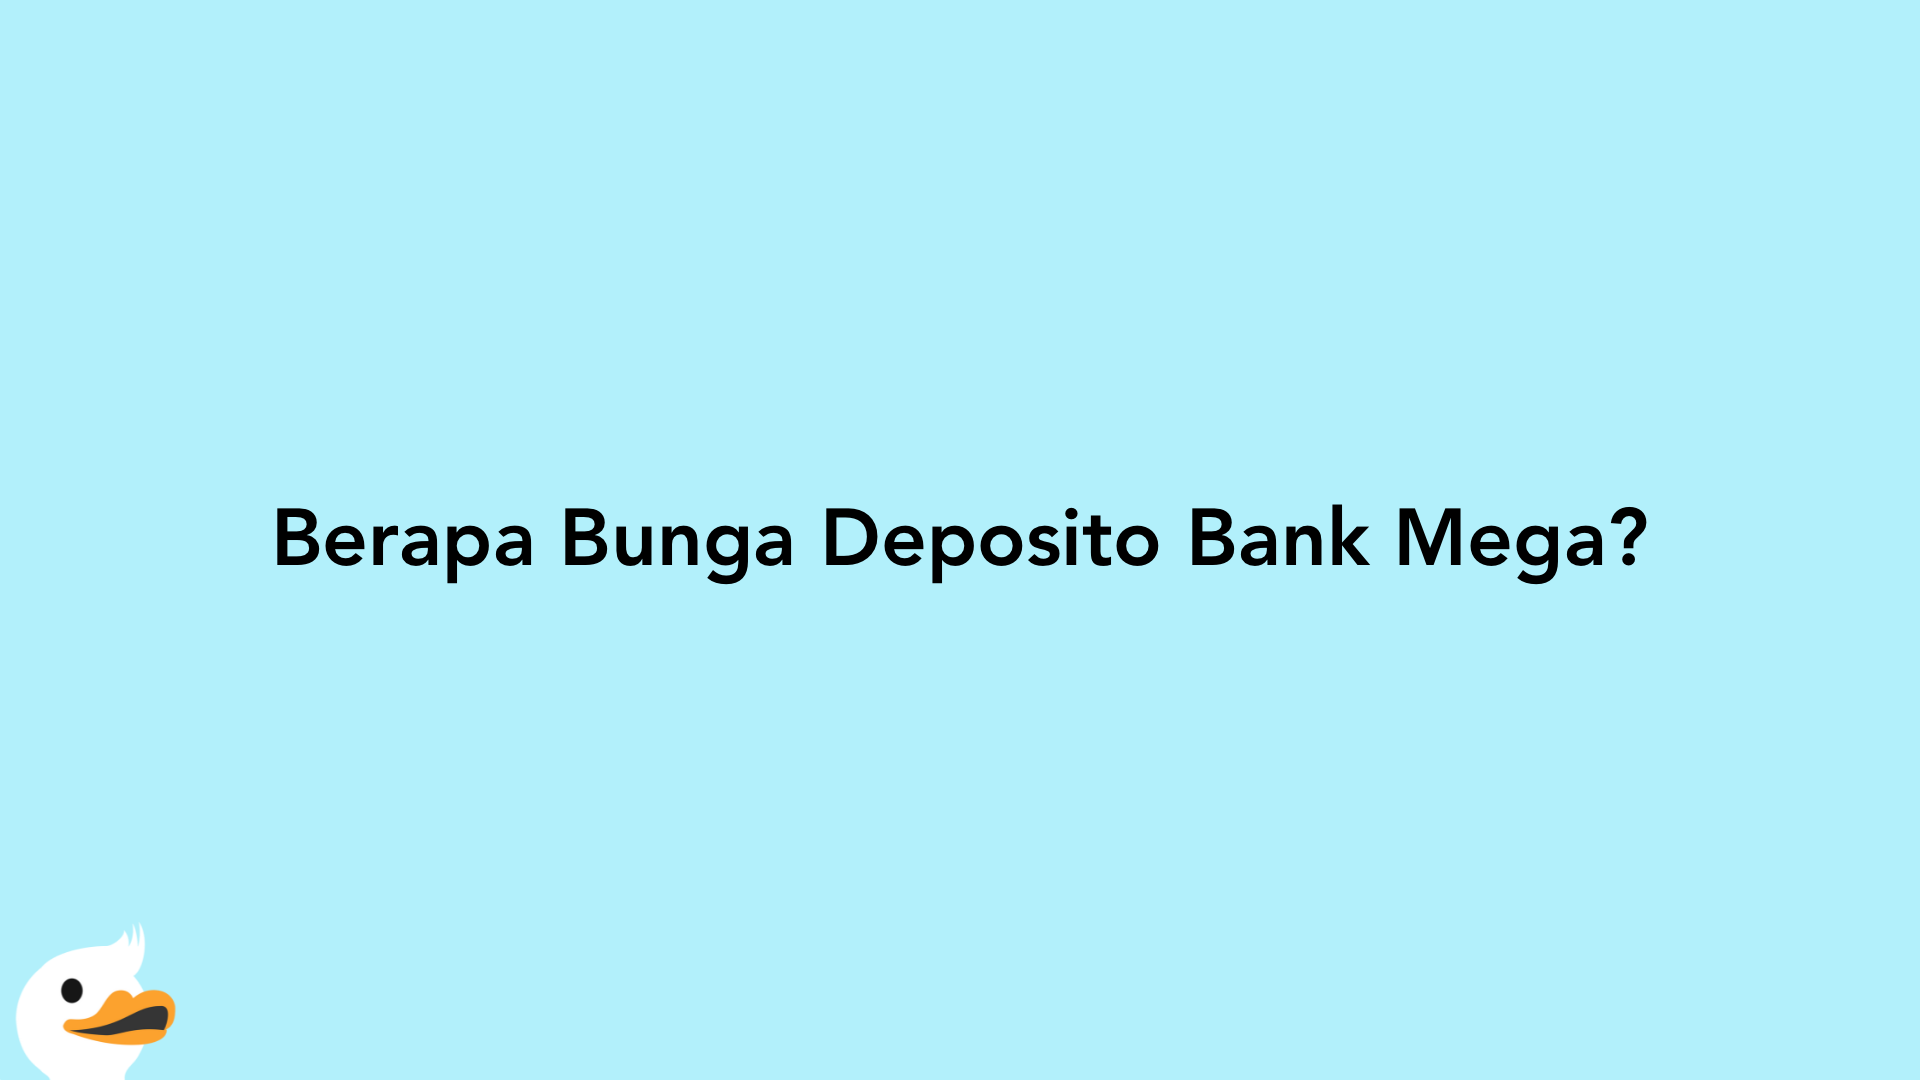 Berapa Bunga Deposito Bank Mega?